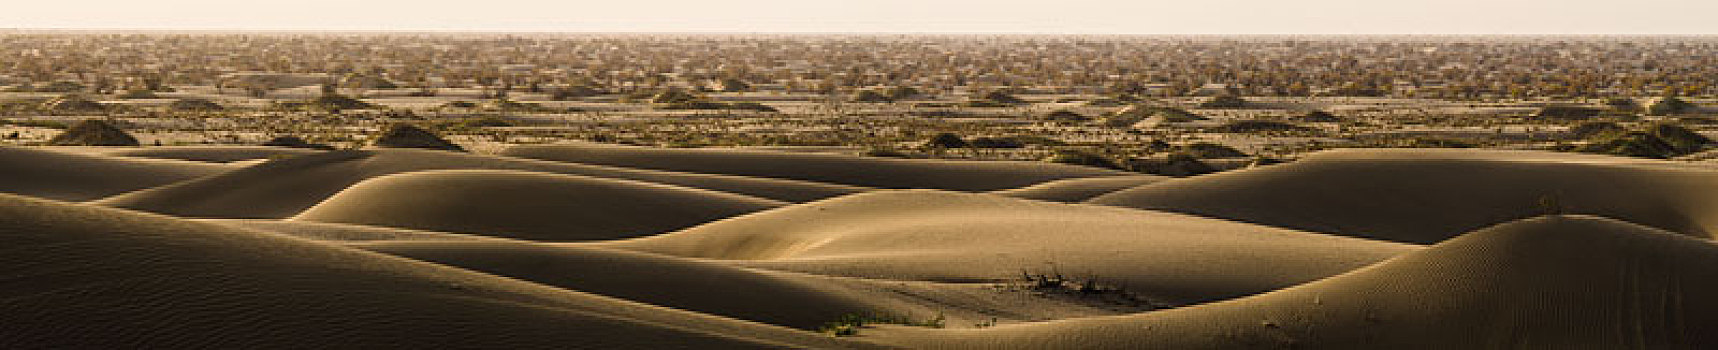 塔克拉玛干沙漠的边缘地带